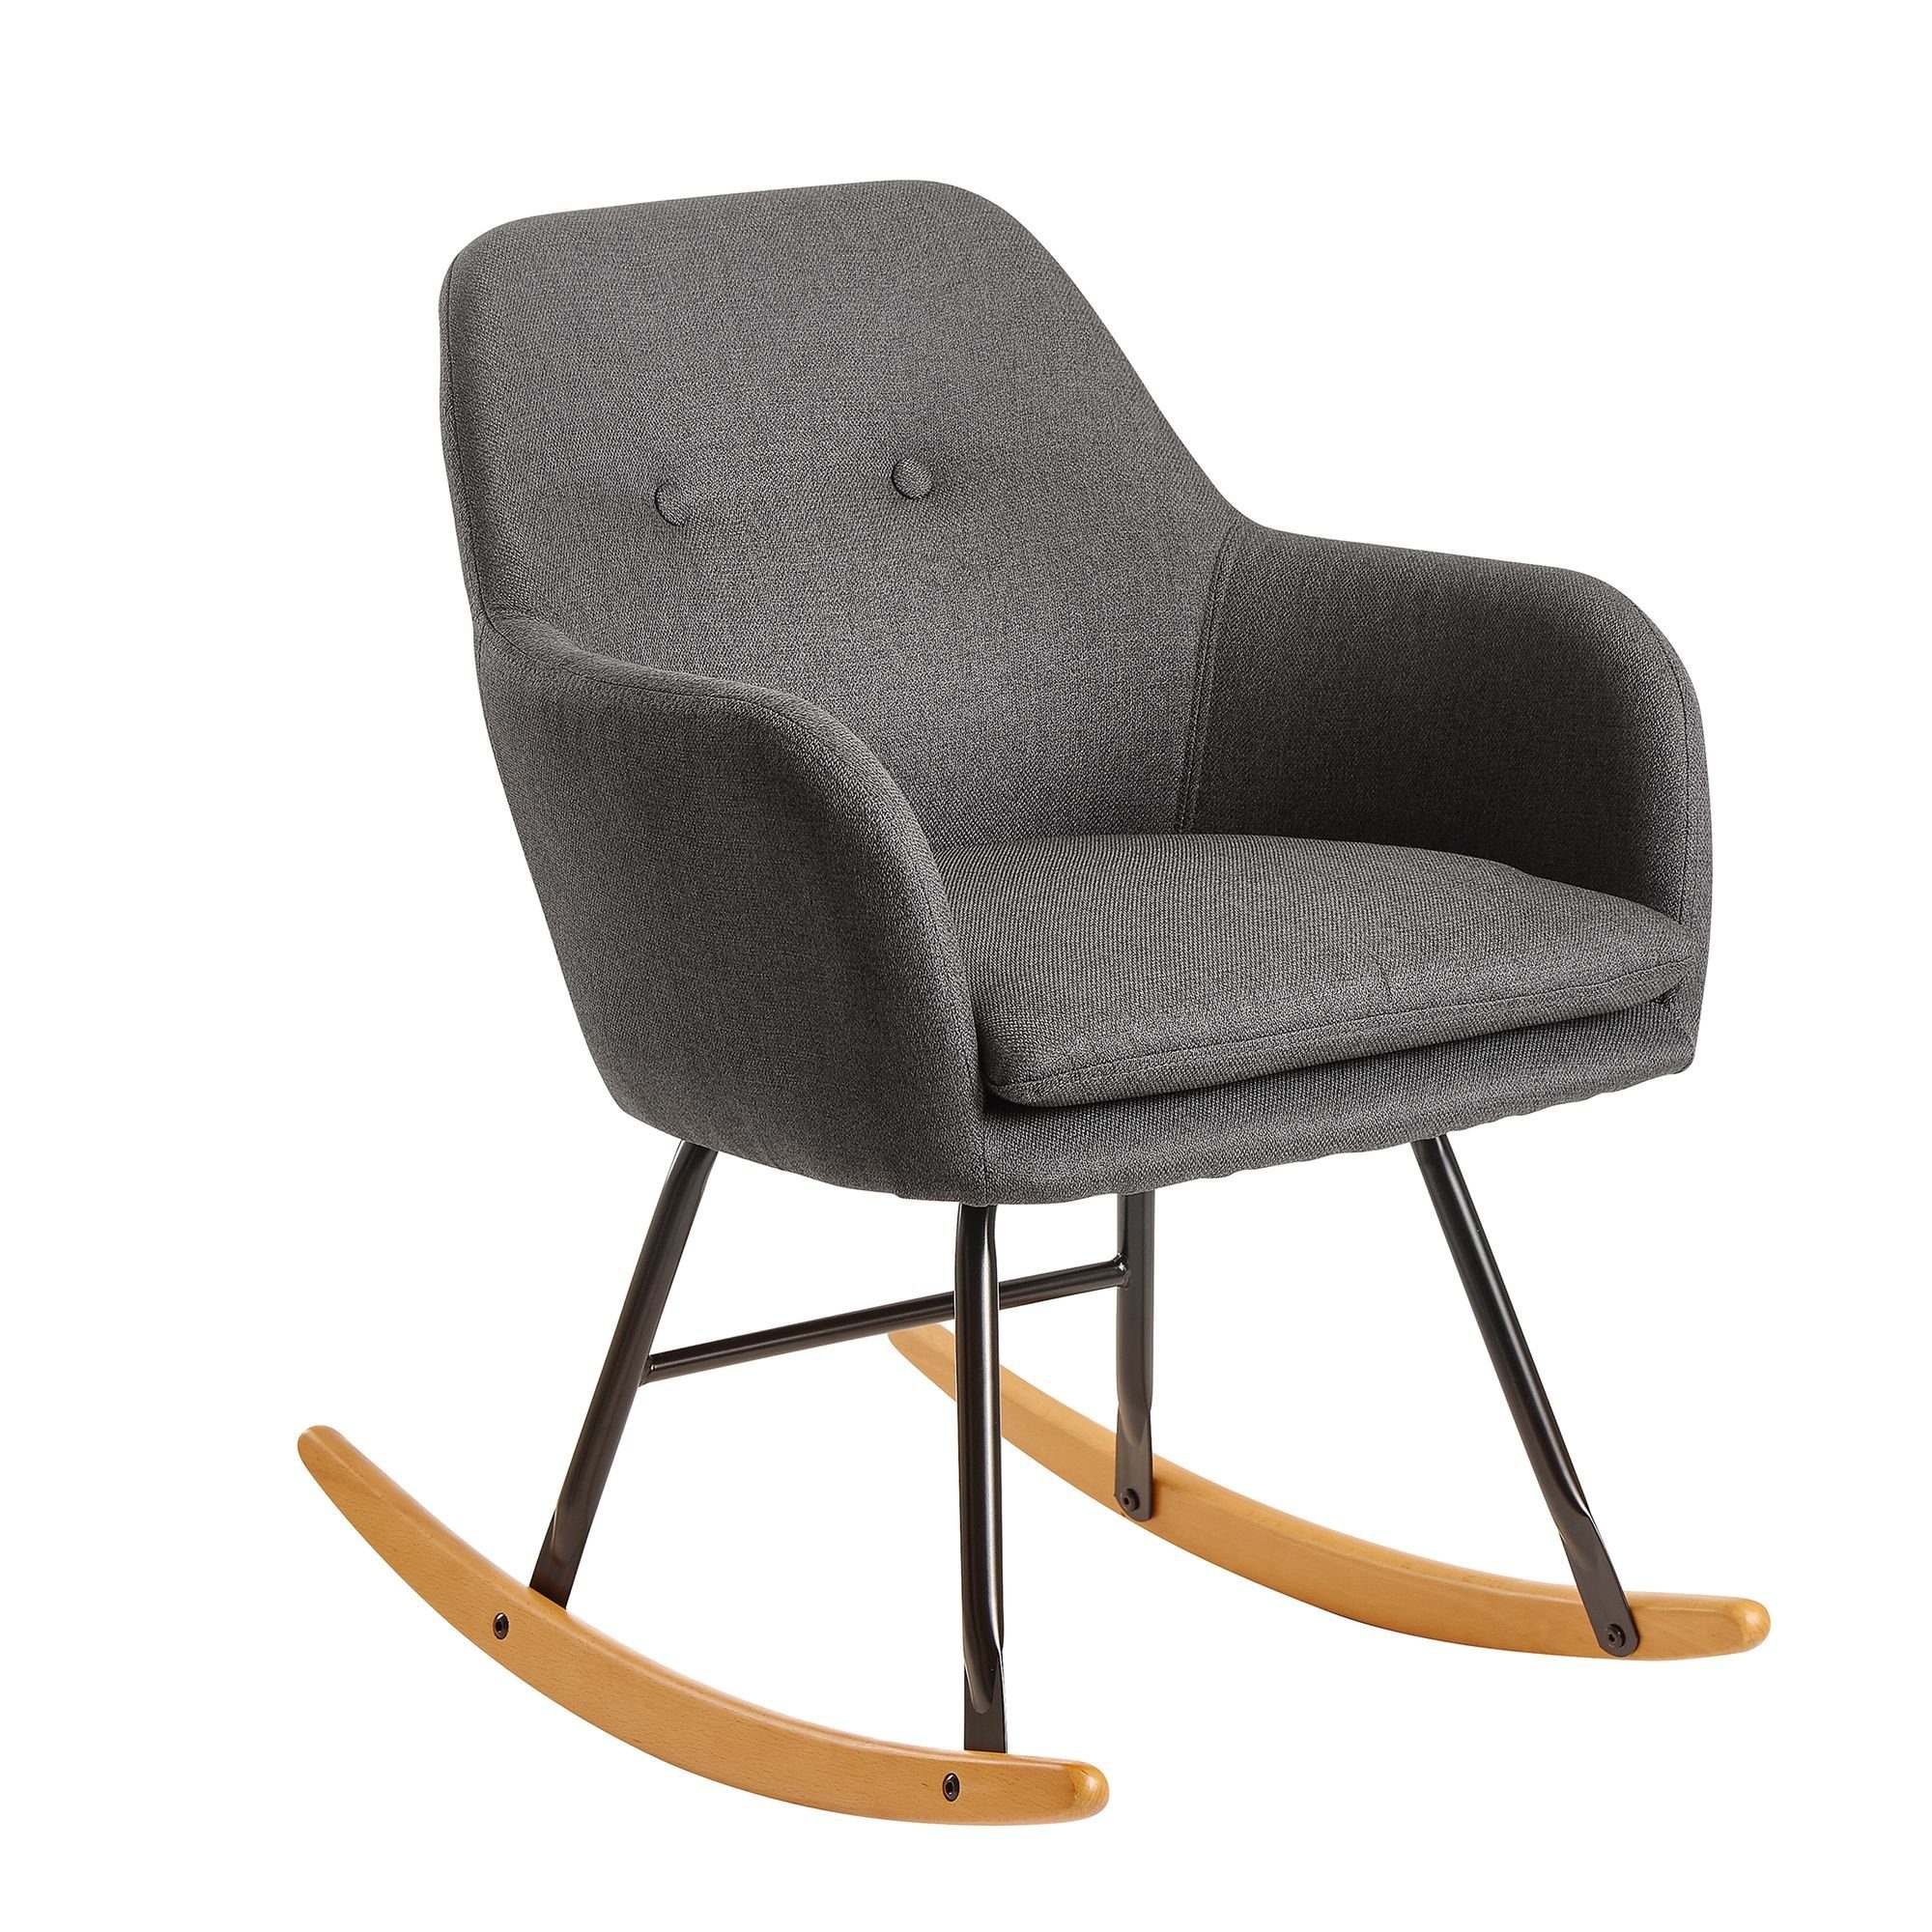 KADIMA DESIGN Schaukelstuhl Gemütlicher Stuhl: Skandinavisches Design, kompakte Größe Anthrazit | Anthrazit